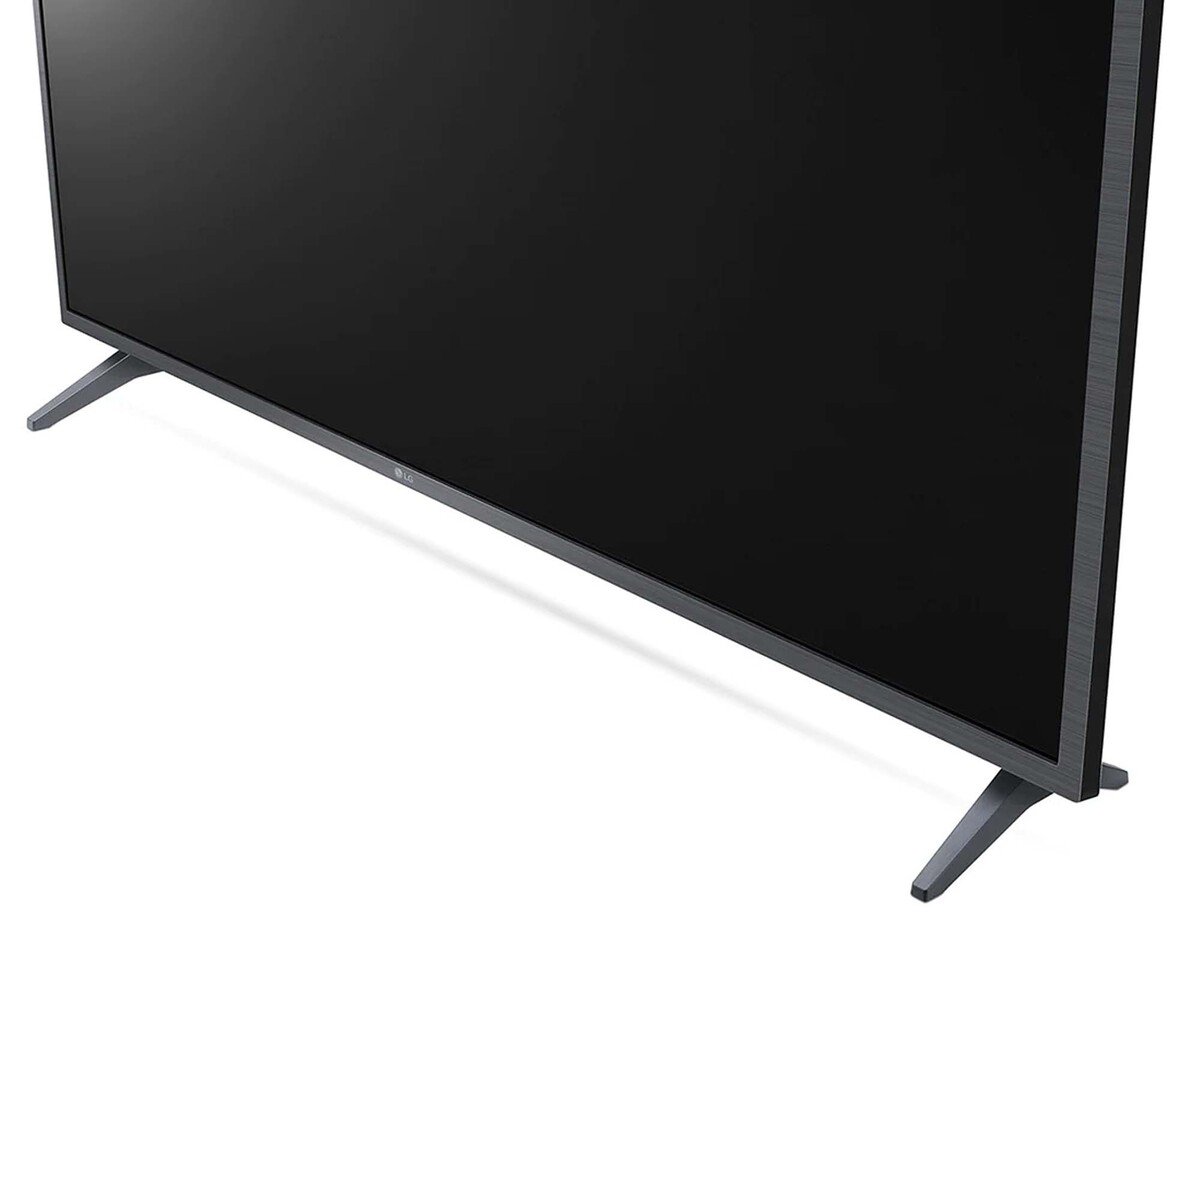 SMART TECHNOLOGY - 65 POUCES - SMART TV - Ultra HD 4K - Noir - Gara